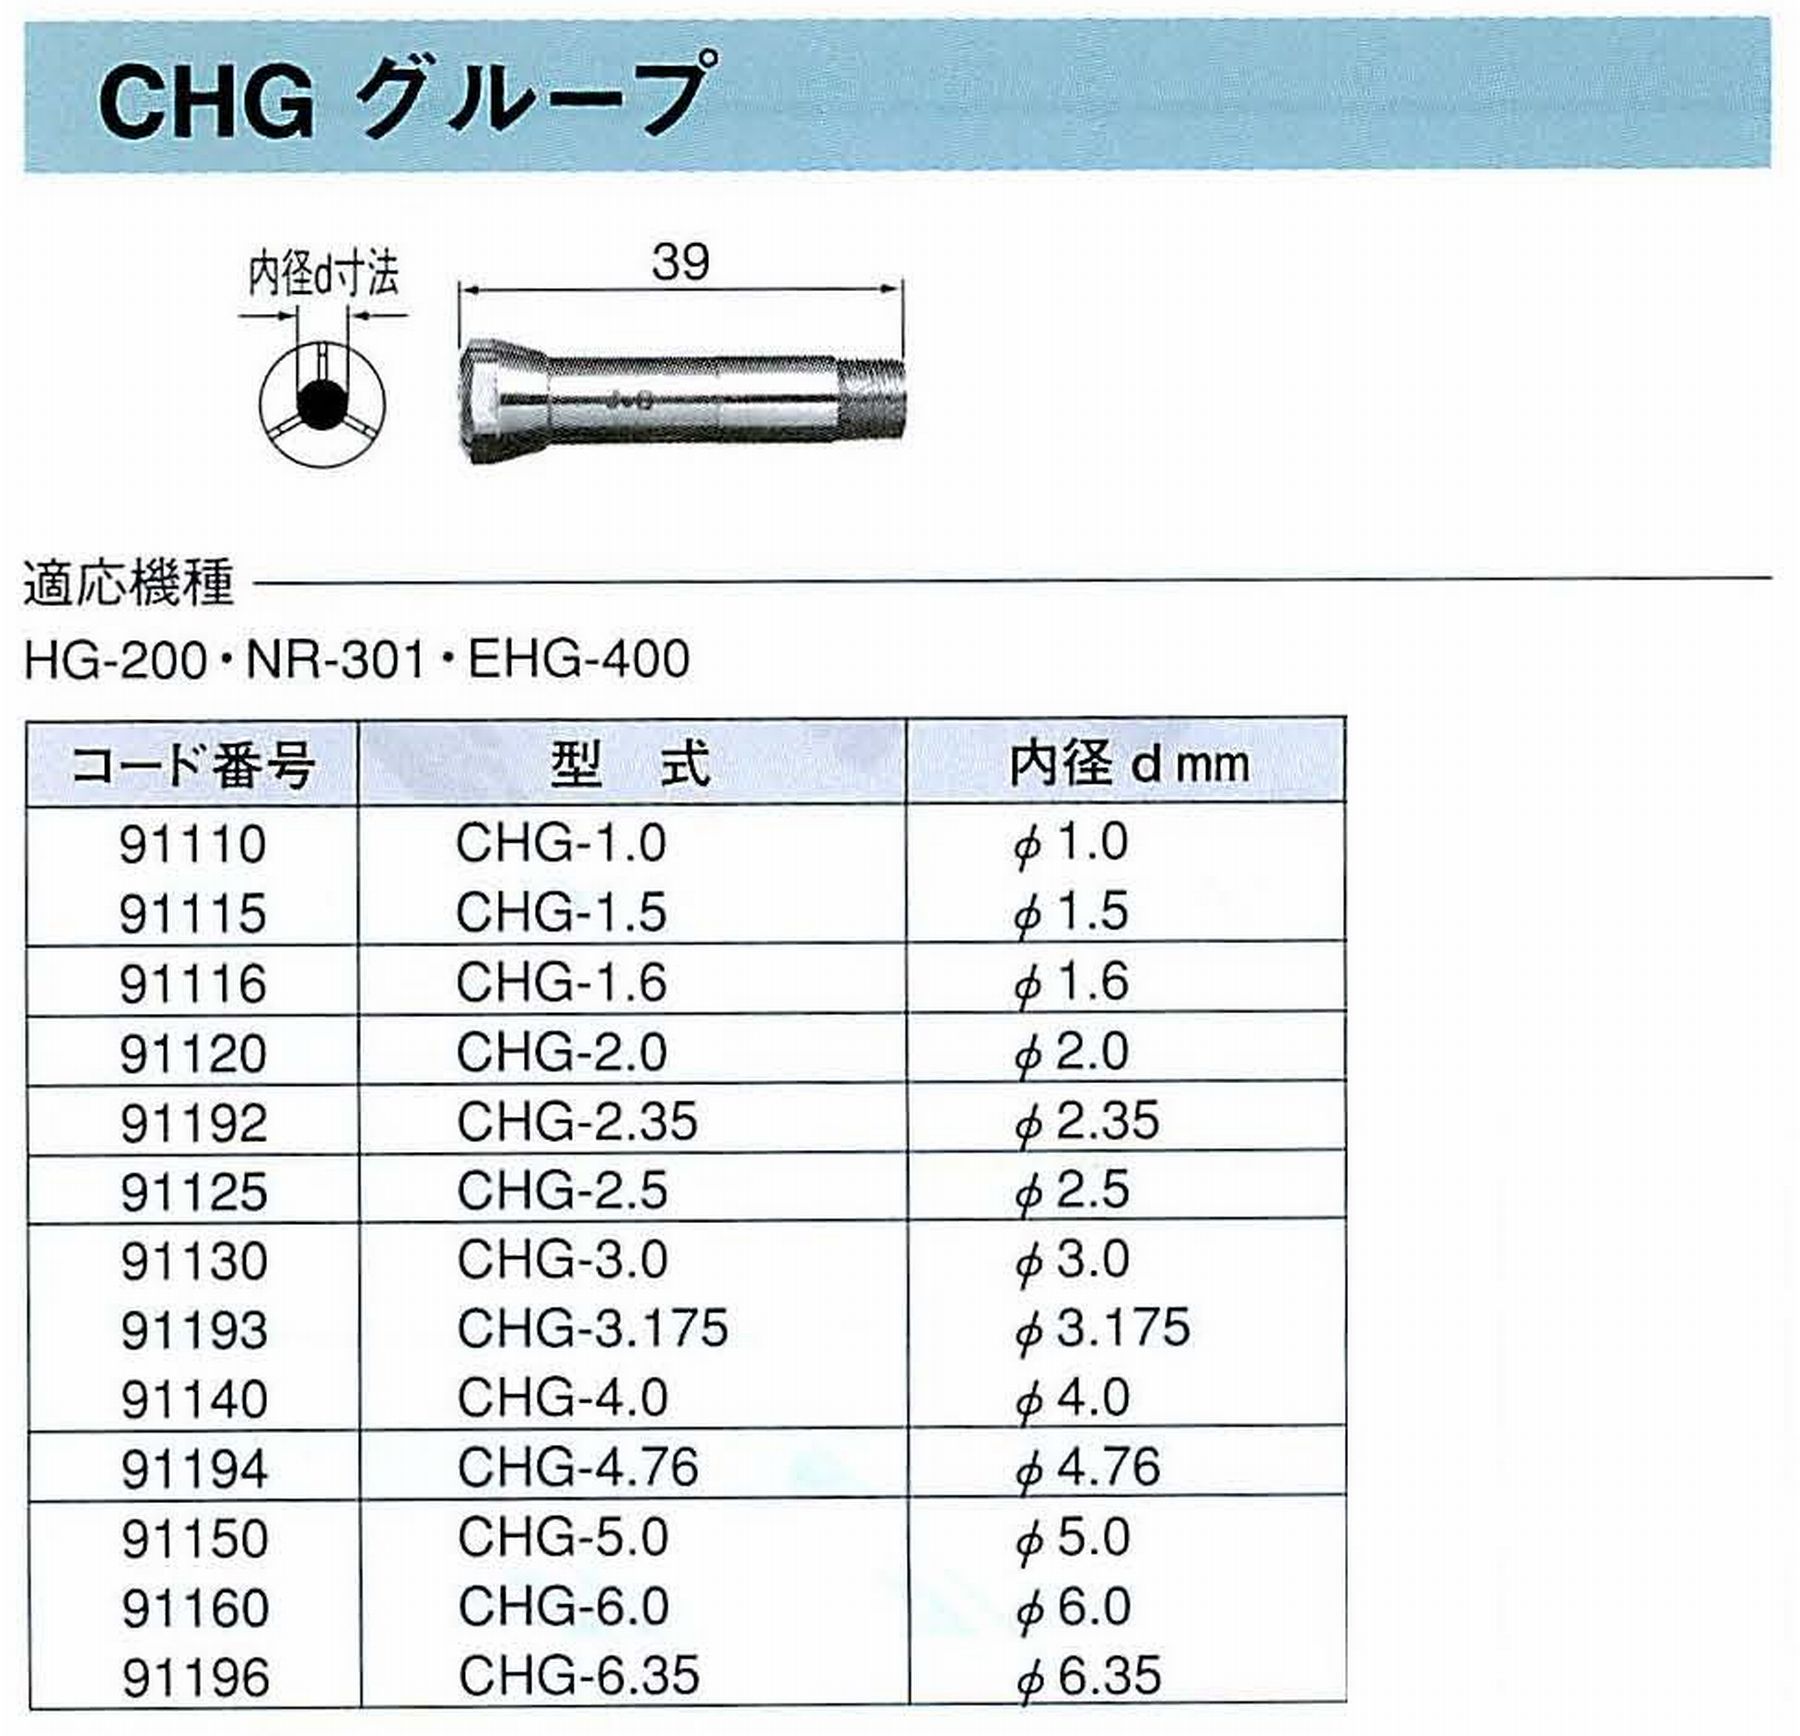 ナカニシ/NAKANISHI コレットチャック コード番号 91193 型式 CHG-3.175 内径:Φ3.175